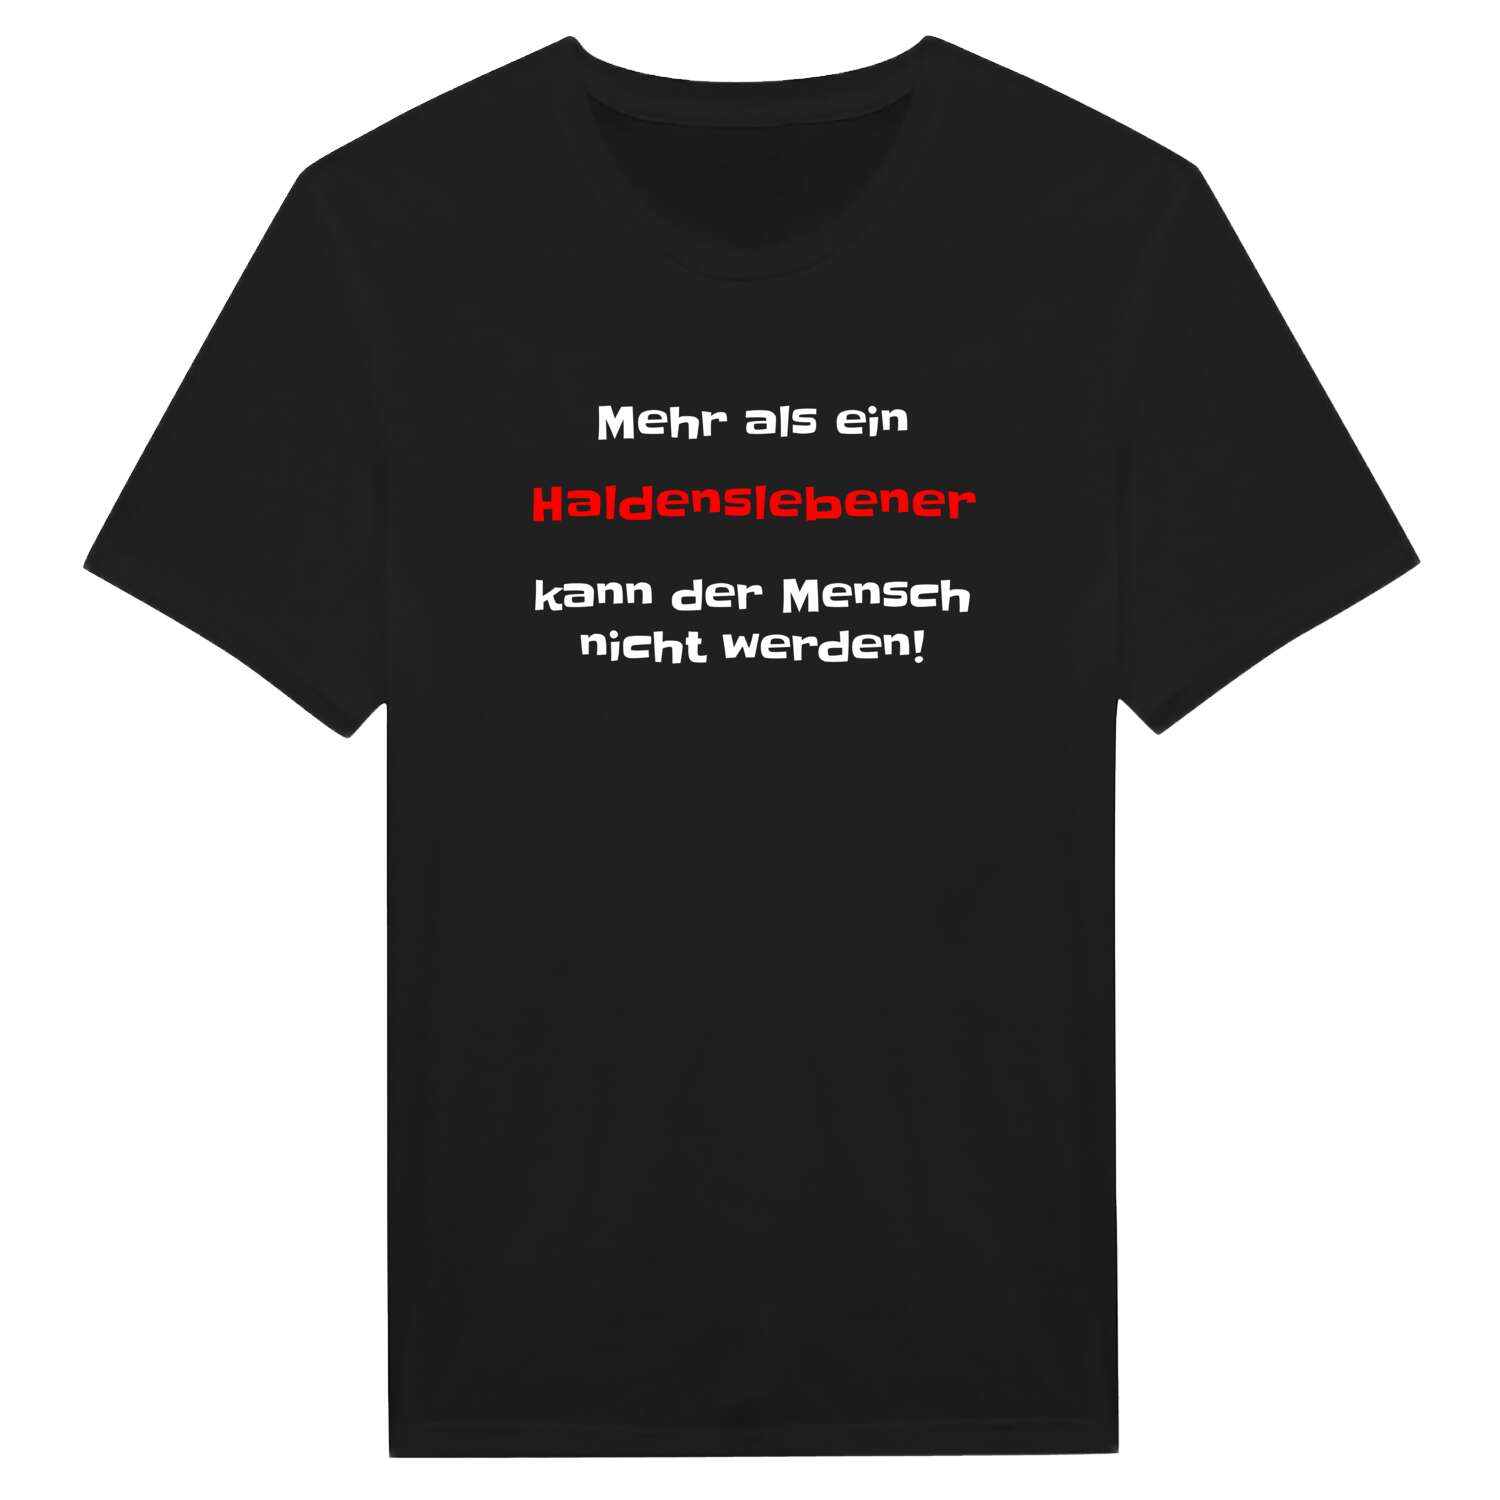 Haldensleben T-Shirt »Mehr als ein«